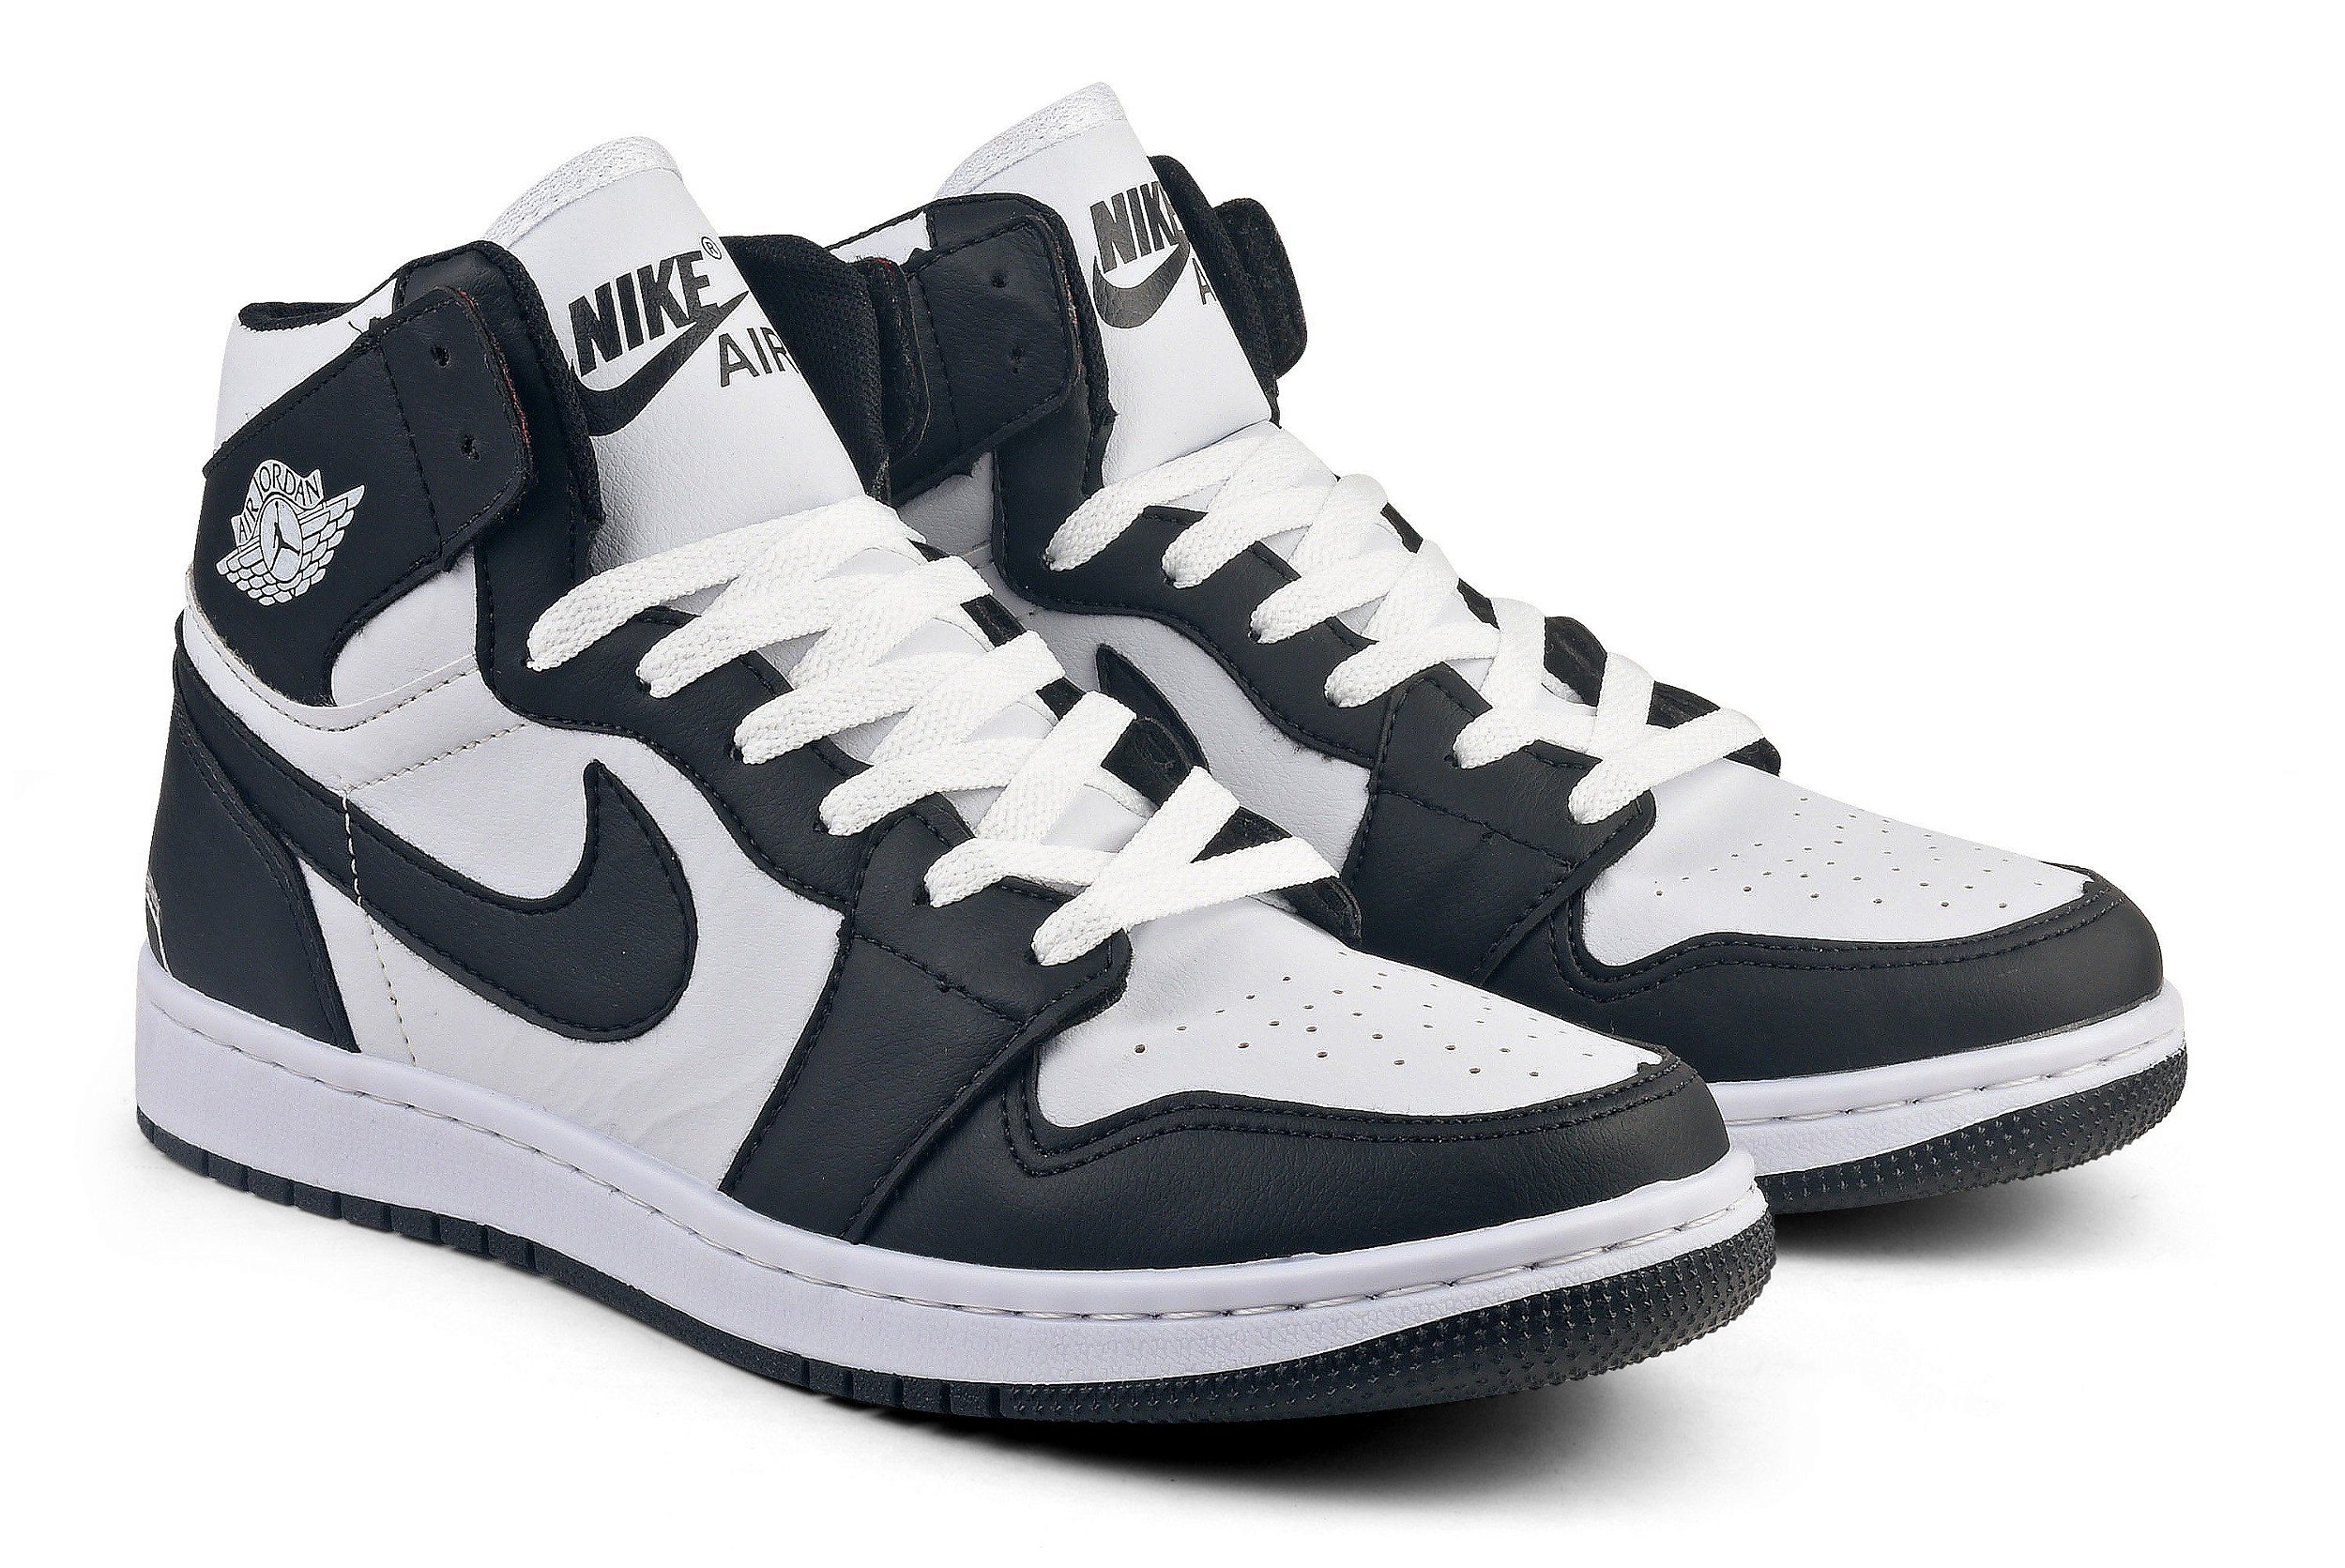 Tênis Nike Air Jordan 1 Retro ''Chicago'' Masculino - ( Várias cores) -  Oficial Tênis